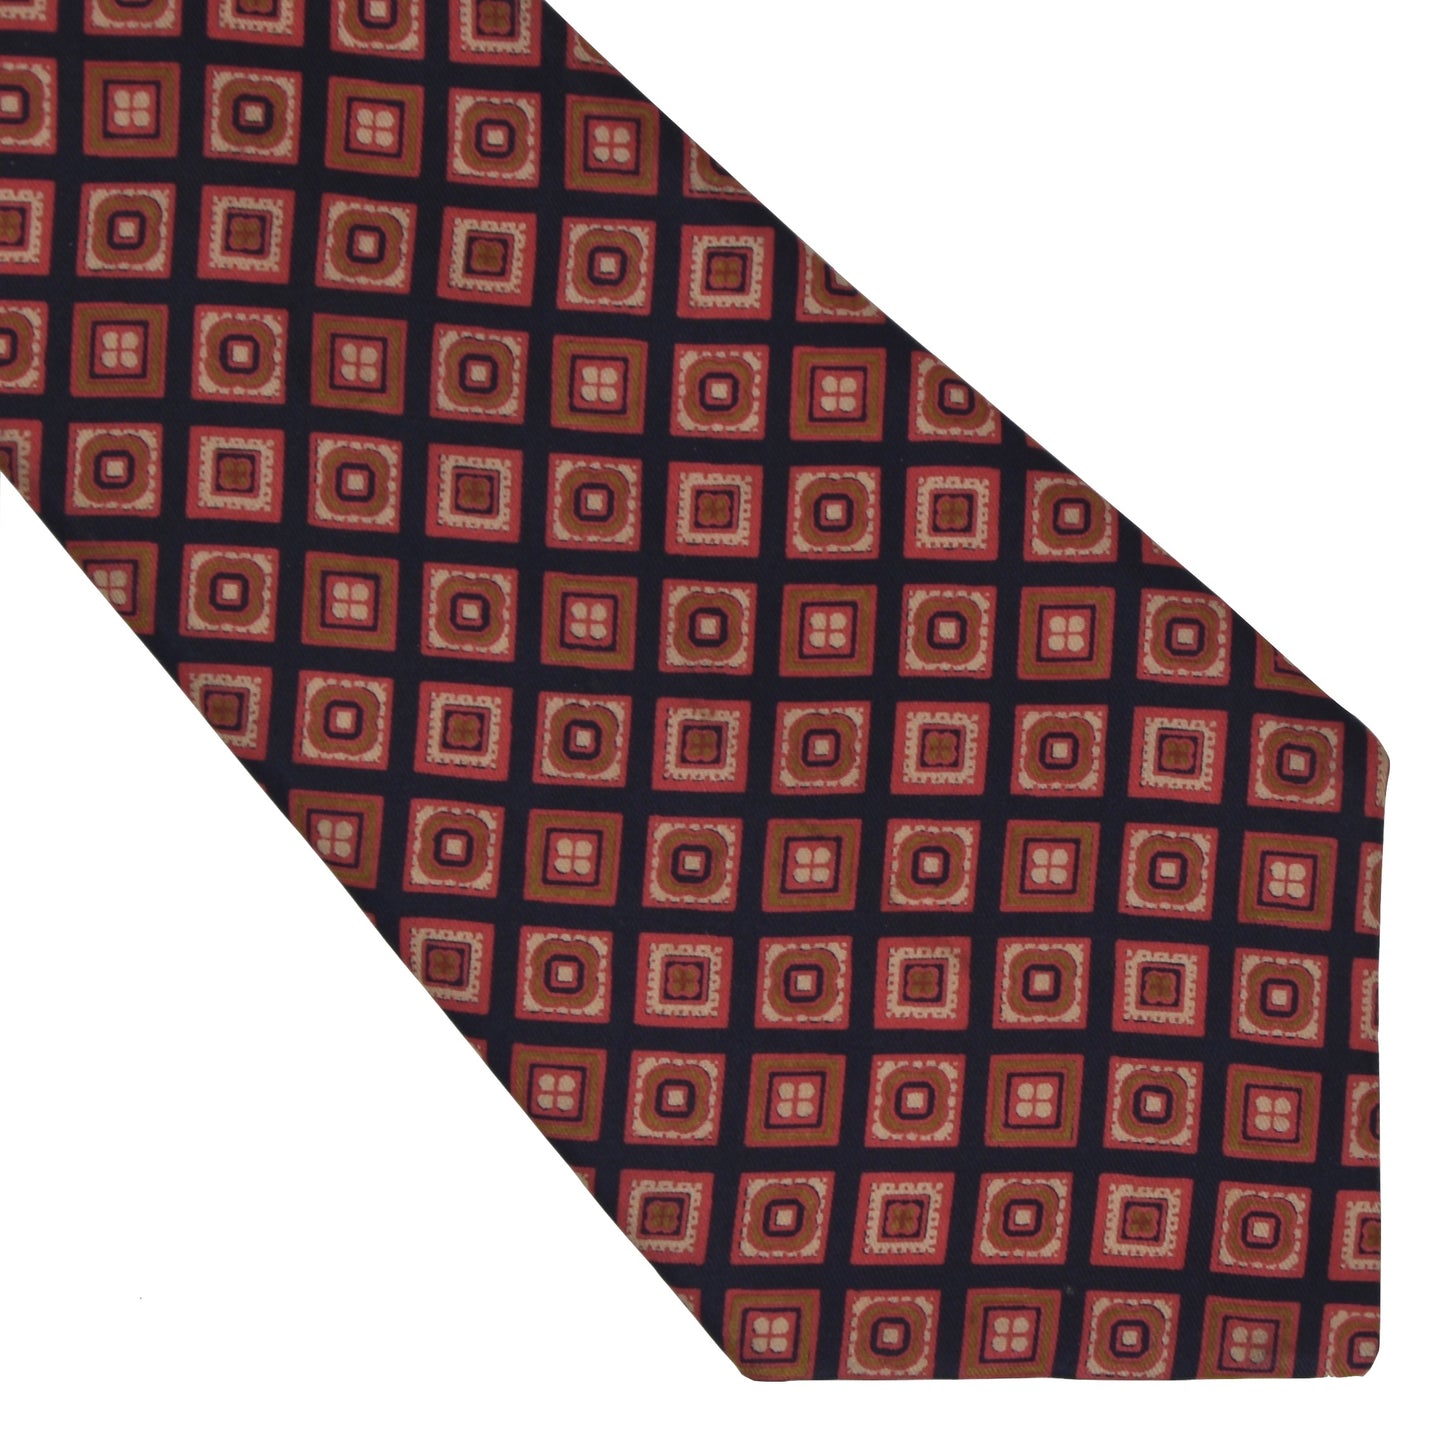 E. Braun & Co. Wien Vintage Silk Tie - Navy & Pink